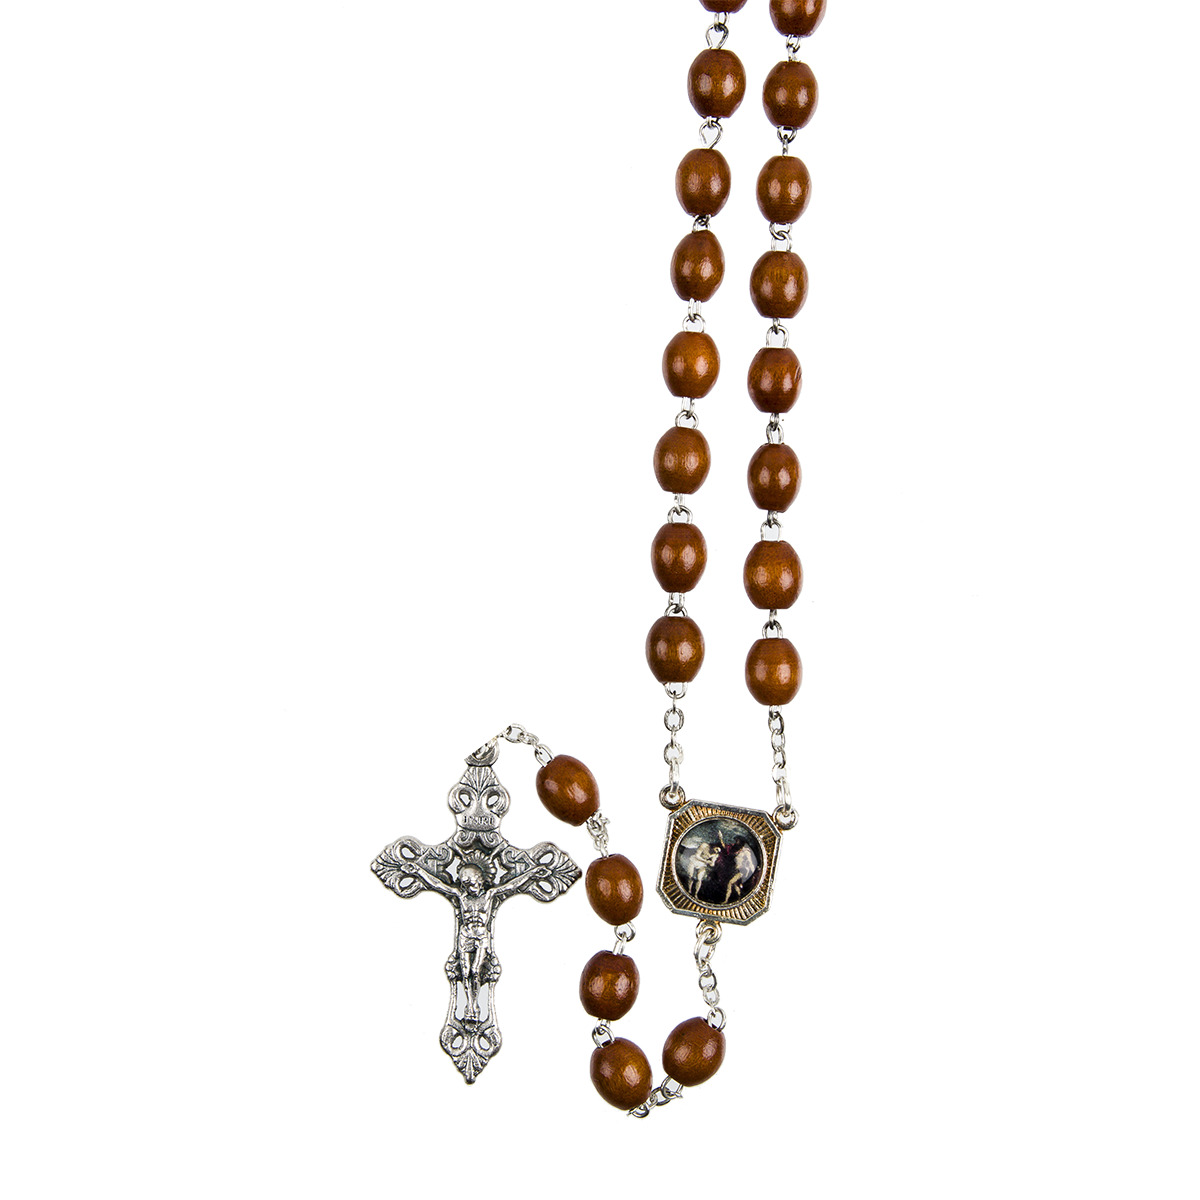 Chapelet de dévotion du rosaire lumineux en bois avec notice explicative, livré en sachet individuel.